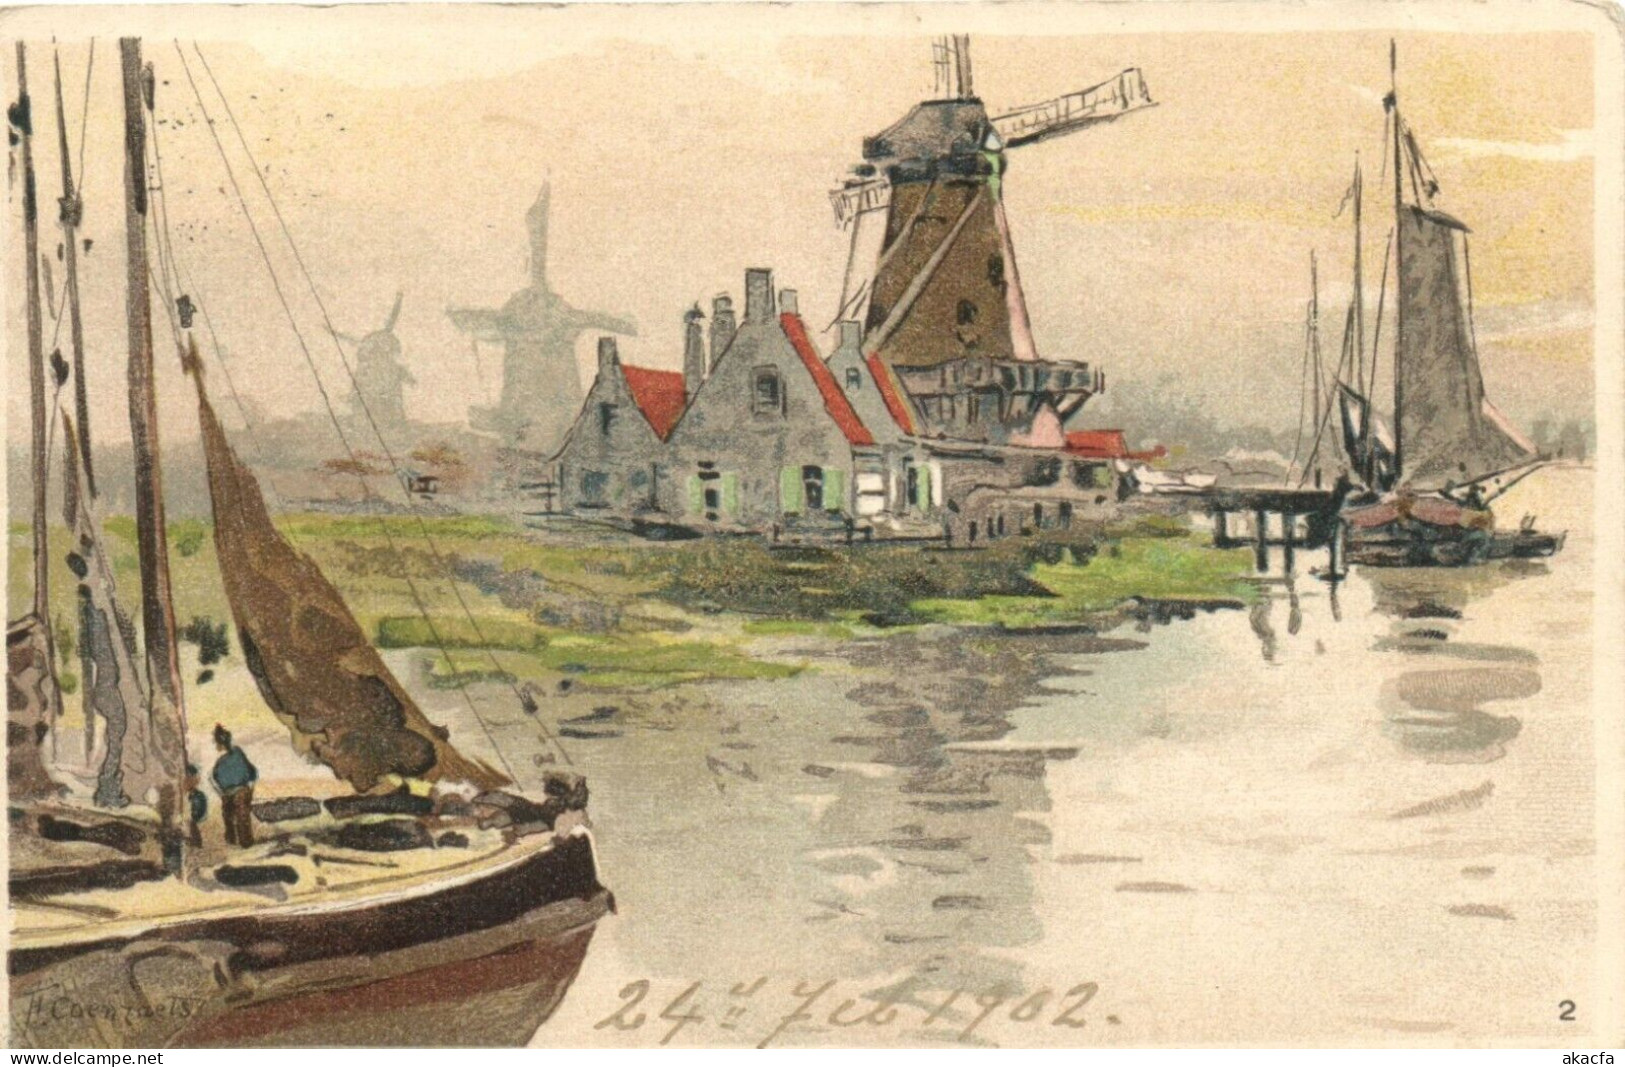 NETHERLANDS 21 Vintage Litho Postcards Mostly Pre-1920 (L6587) - Sammlungen & Sammellose